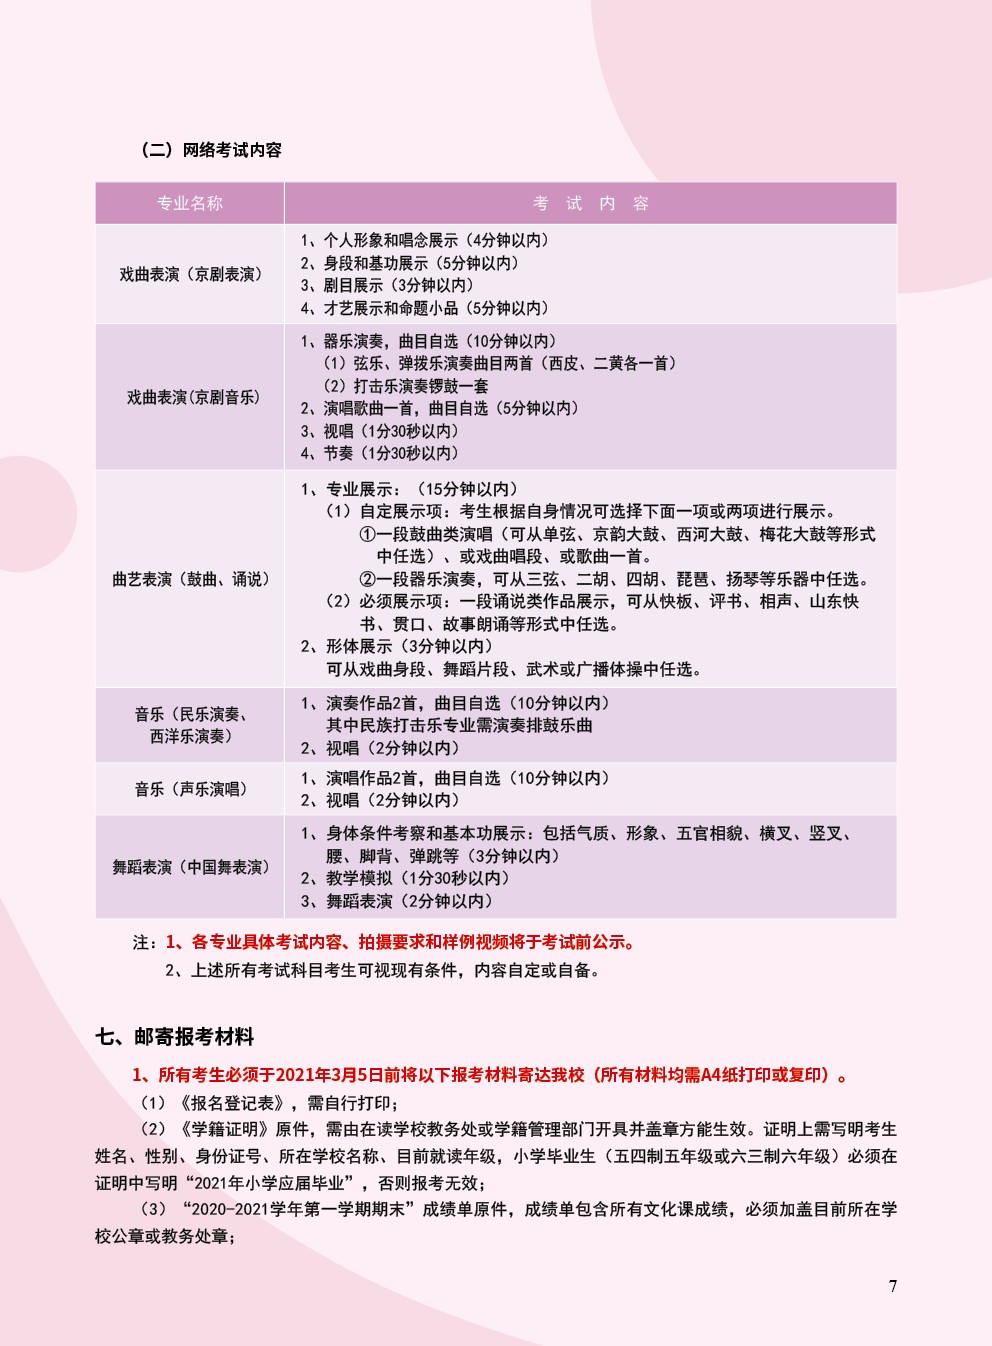 2021年北京戏曲艺术职业学院中专招生简章